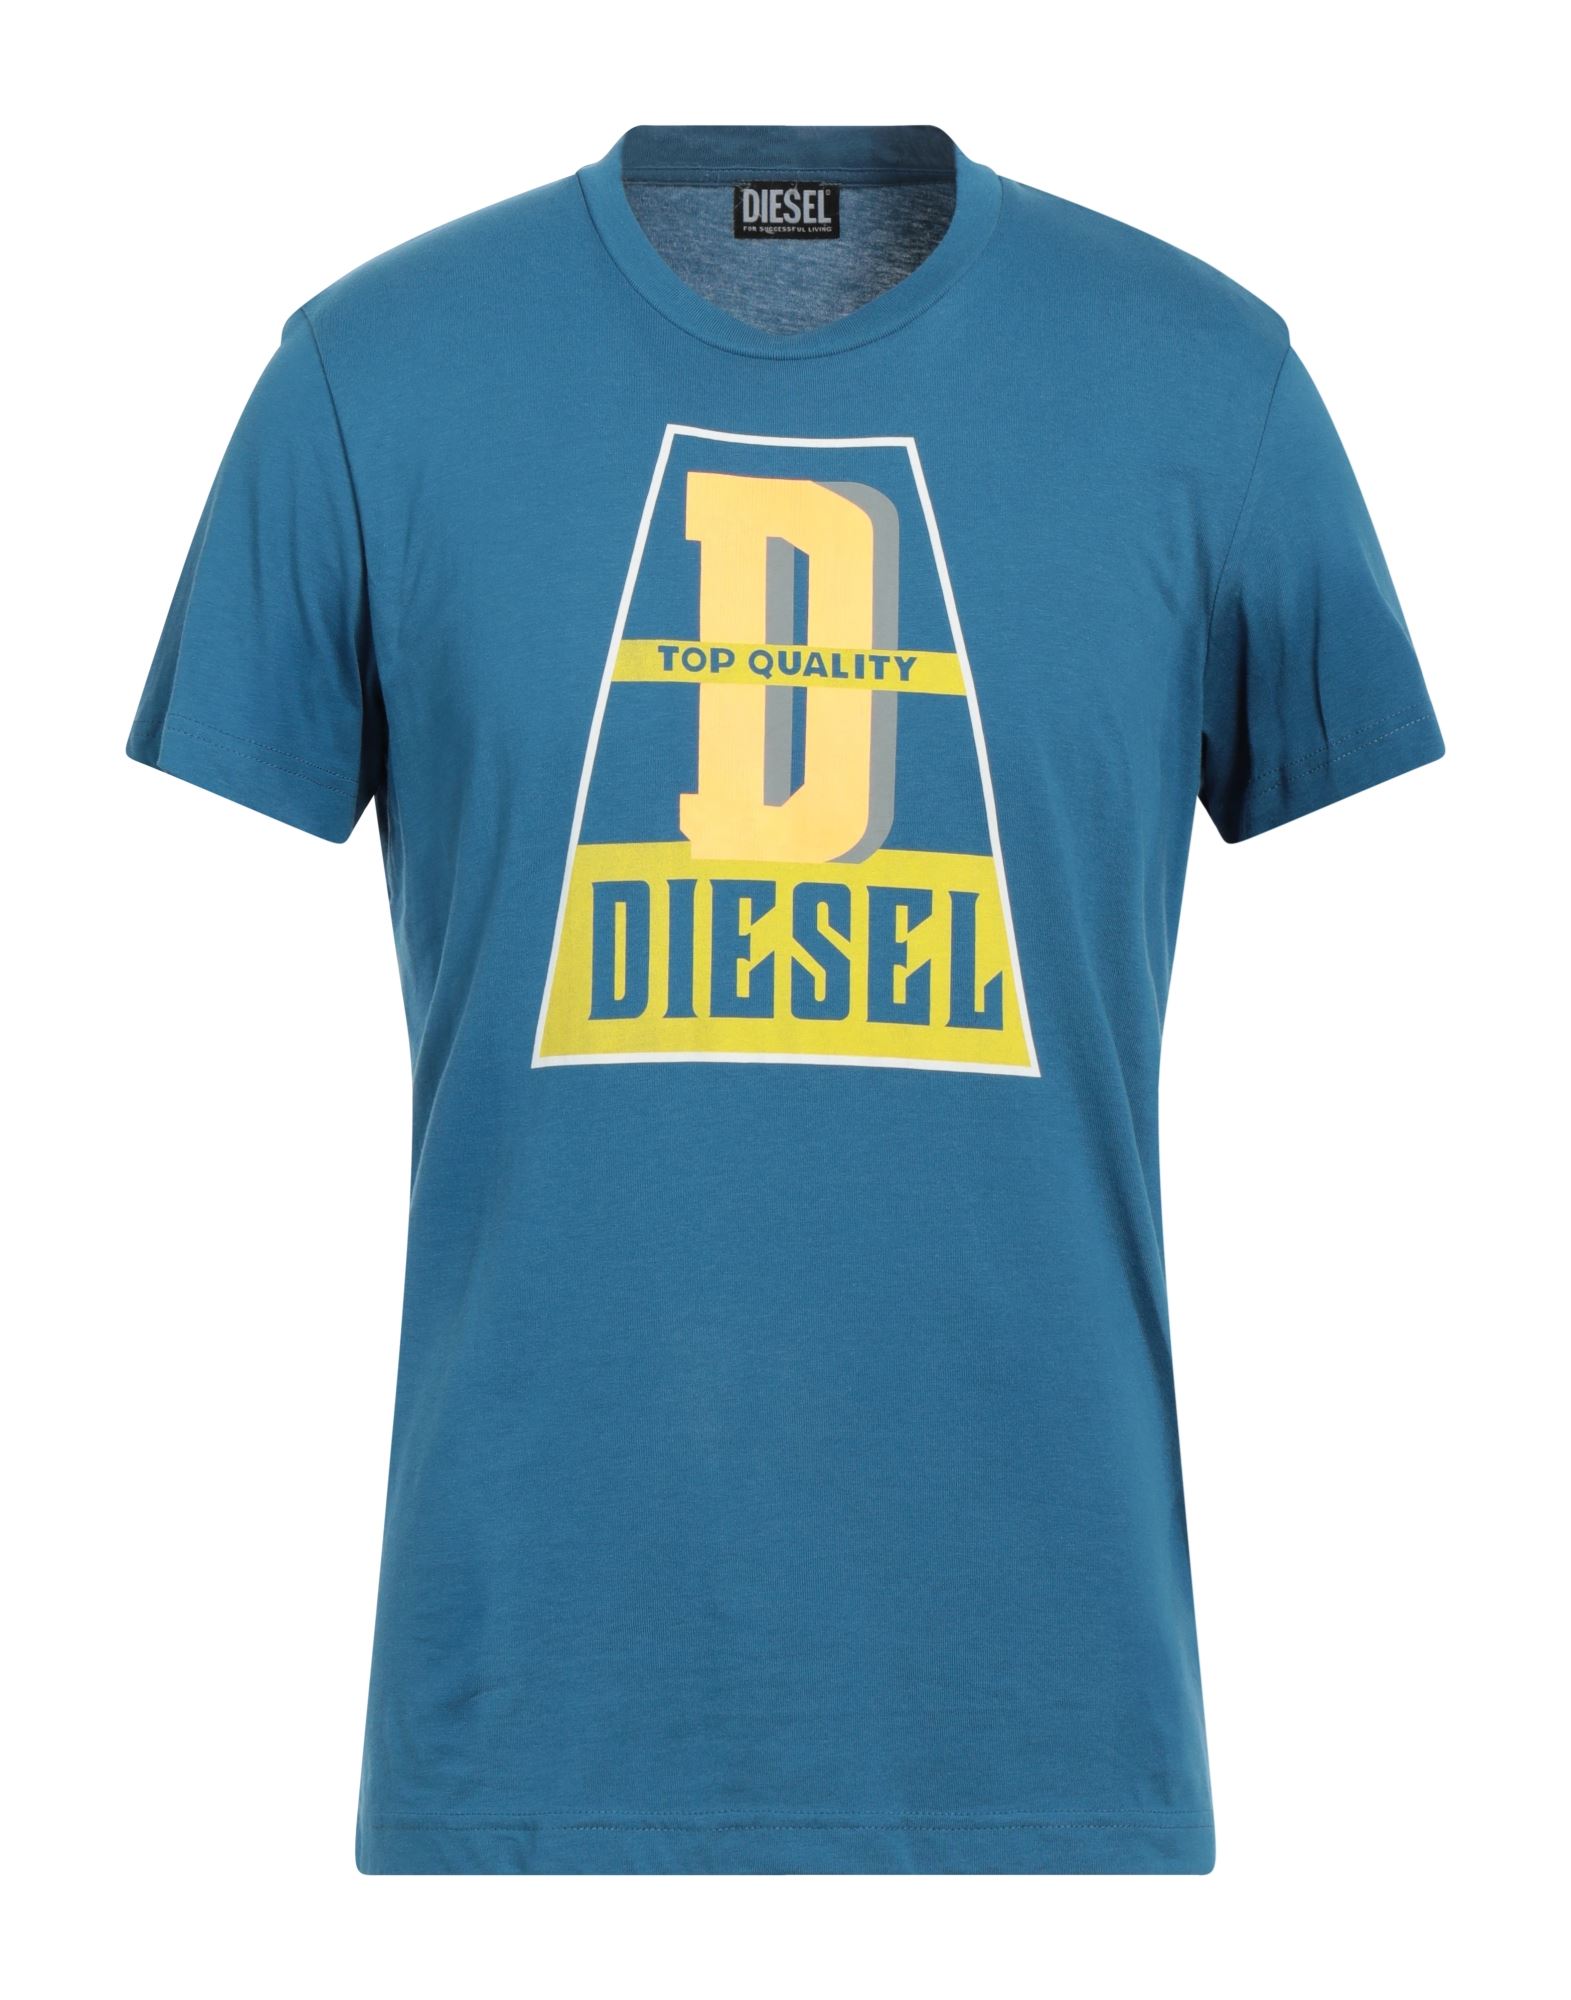 DIESEL T-shirts Herren Azurblau von DIESEL